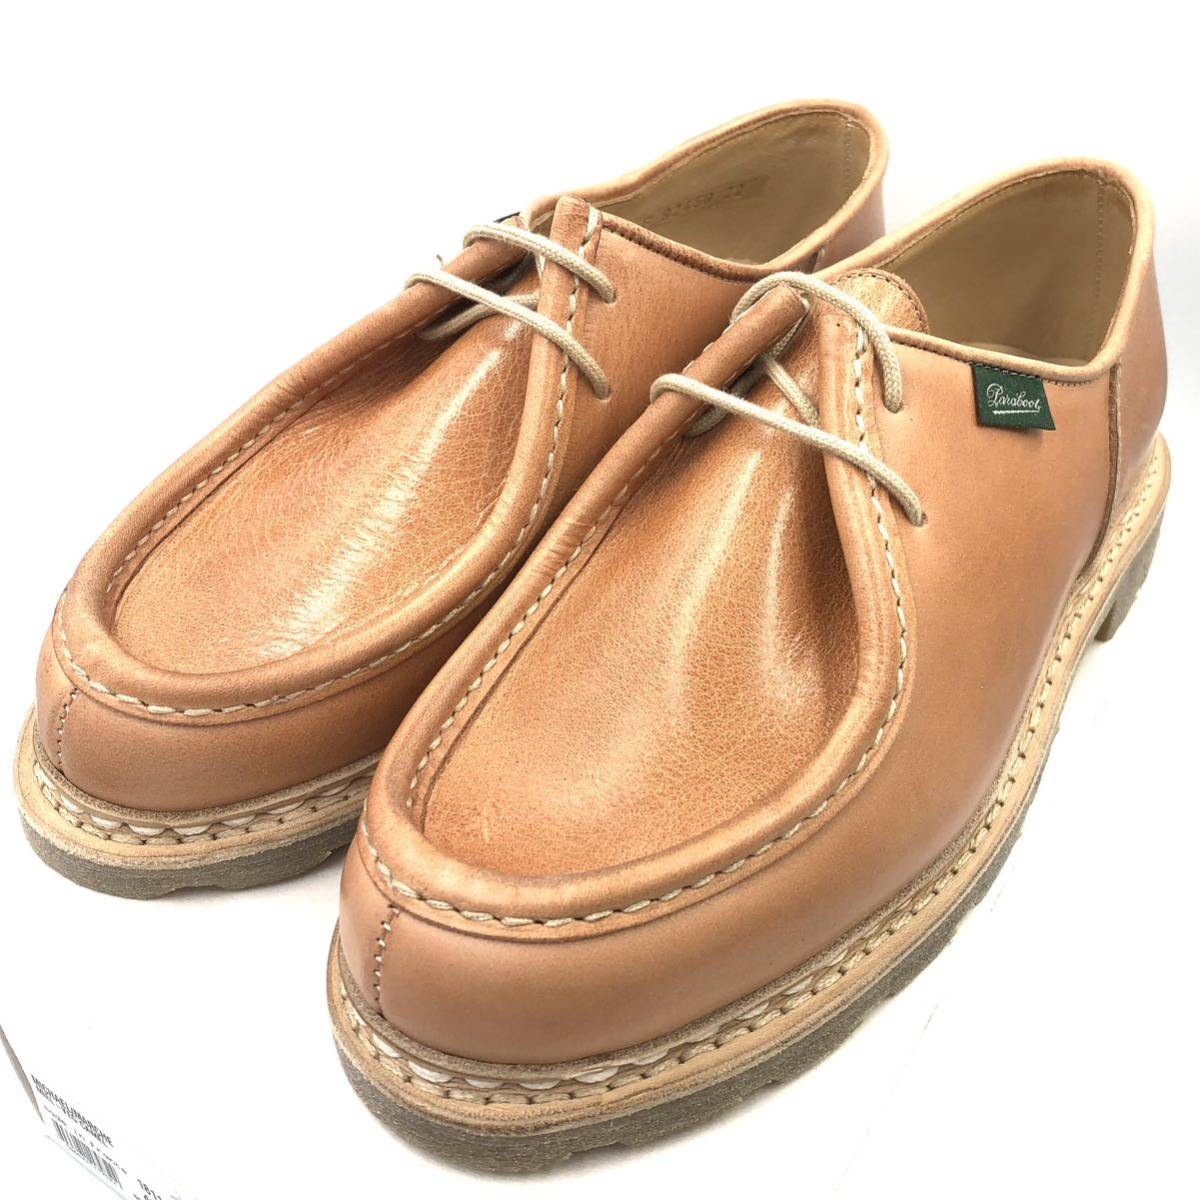 でくす様送料無料PARABOOT CHIMEY UK7(25.5cm)新品未使用 靴 ブーツ 靴